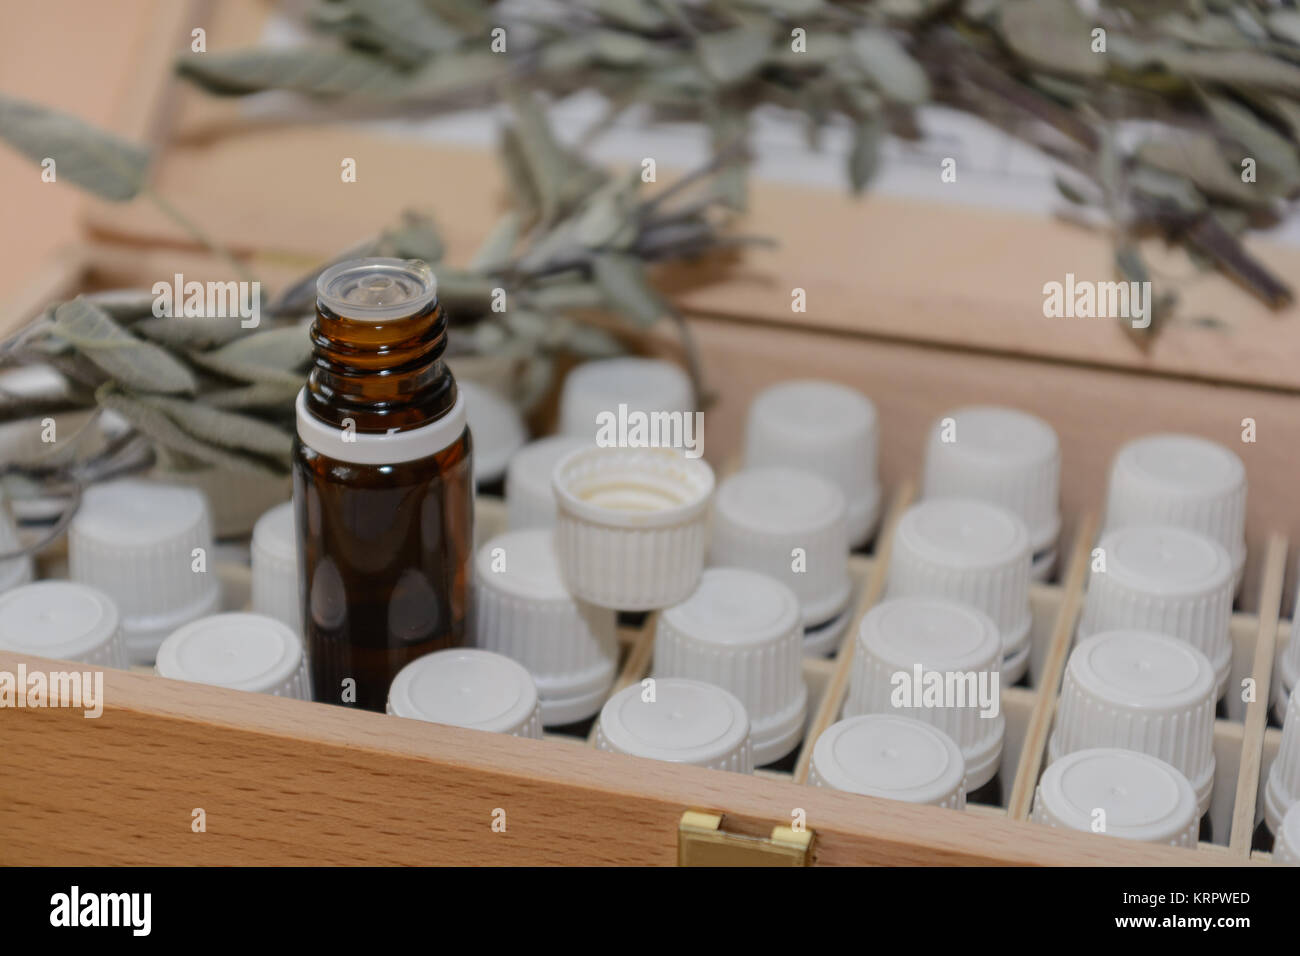 einige Glasfläschchen in einer Holzbox, dahinter Salbei - Nahaufnahme Stock Photo